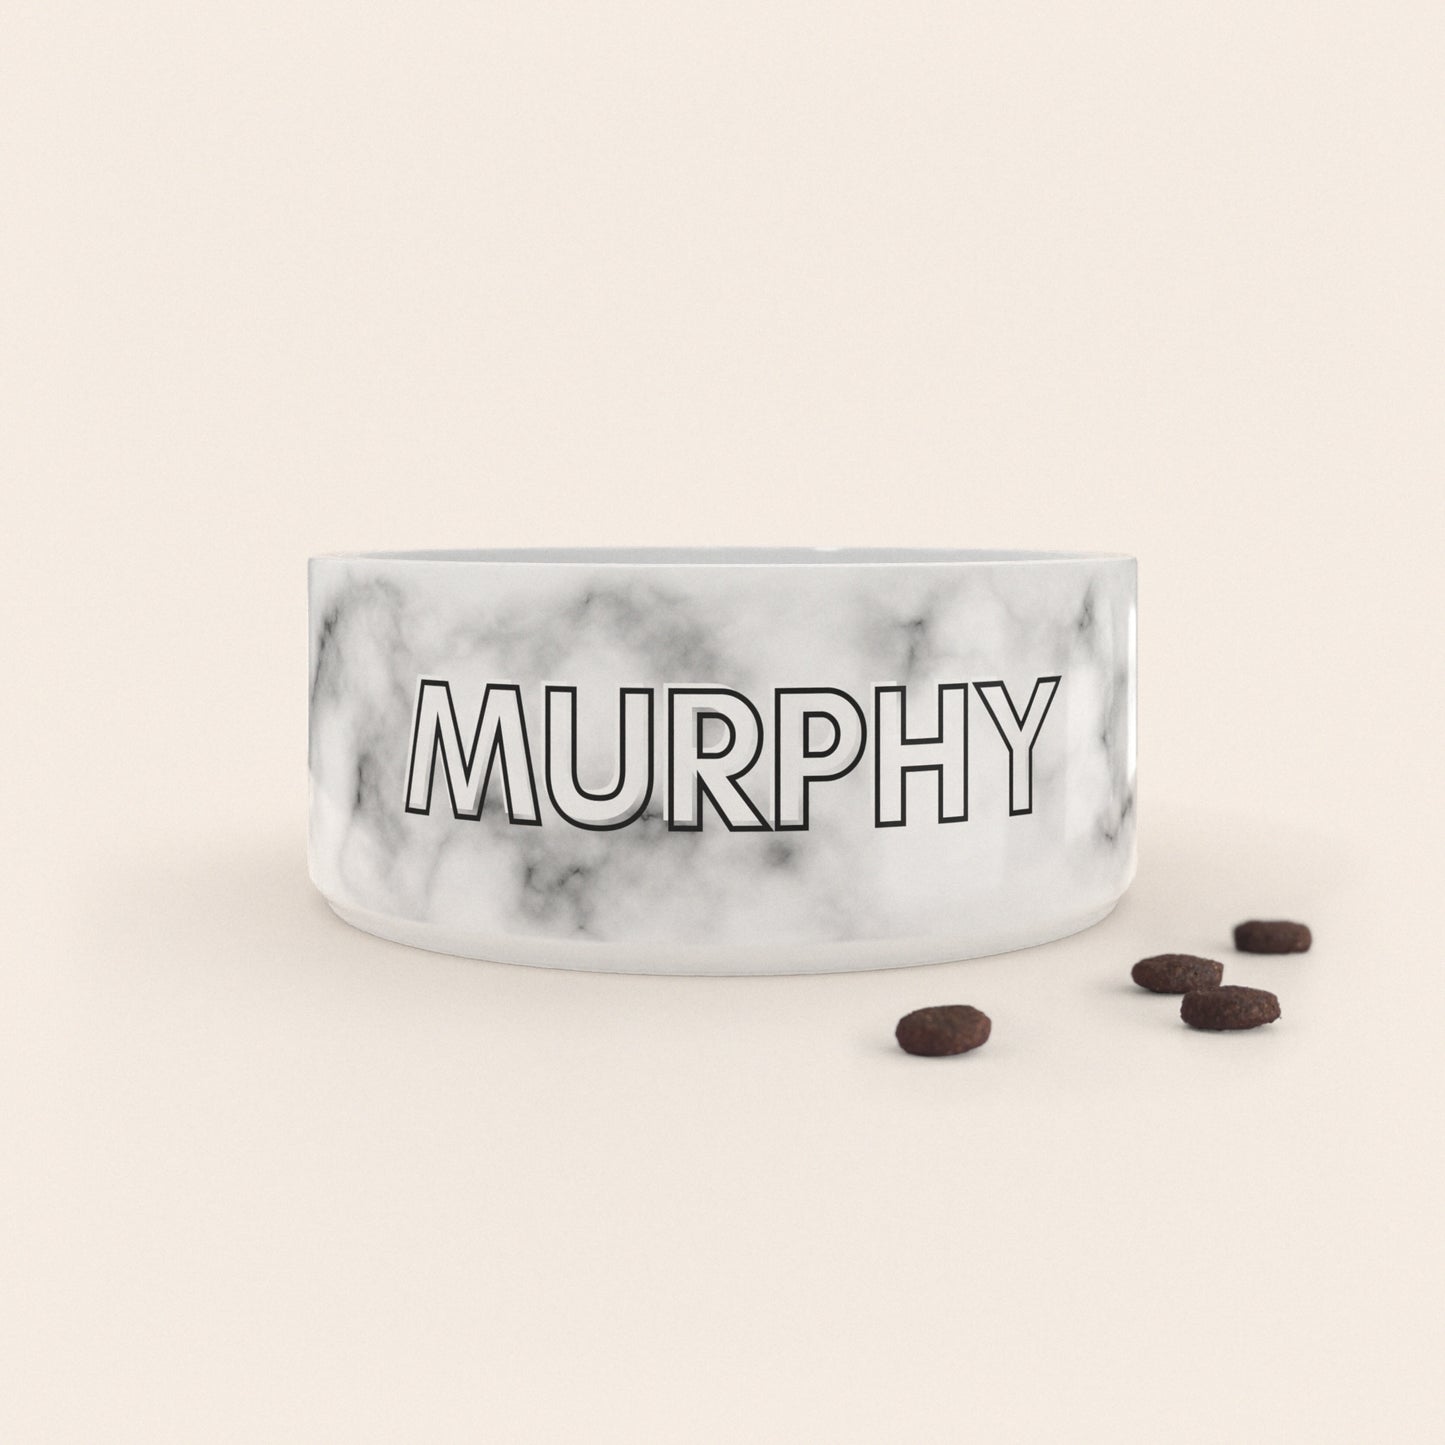 Gamelle pour chien au motif Marbre Blanc personnalisés avec le nom Murphy, accompagné de croquettes sur fond neutre.